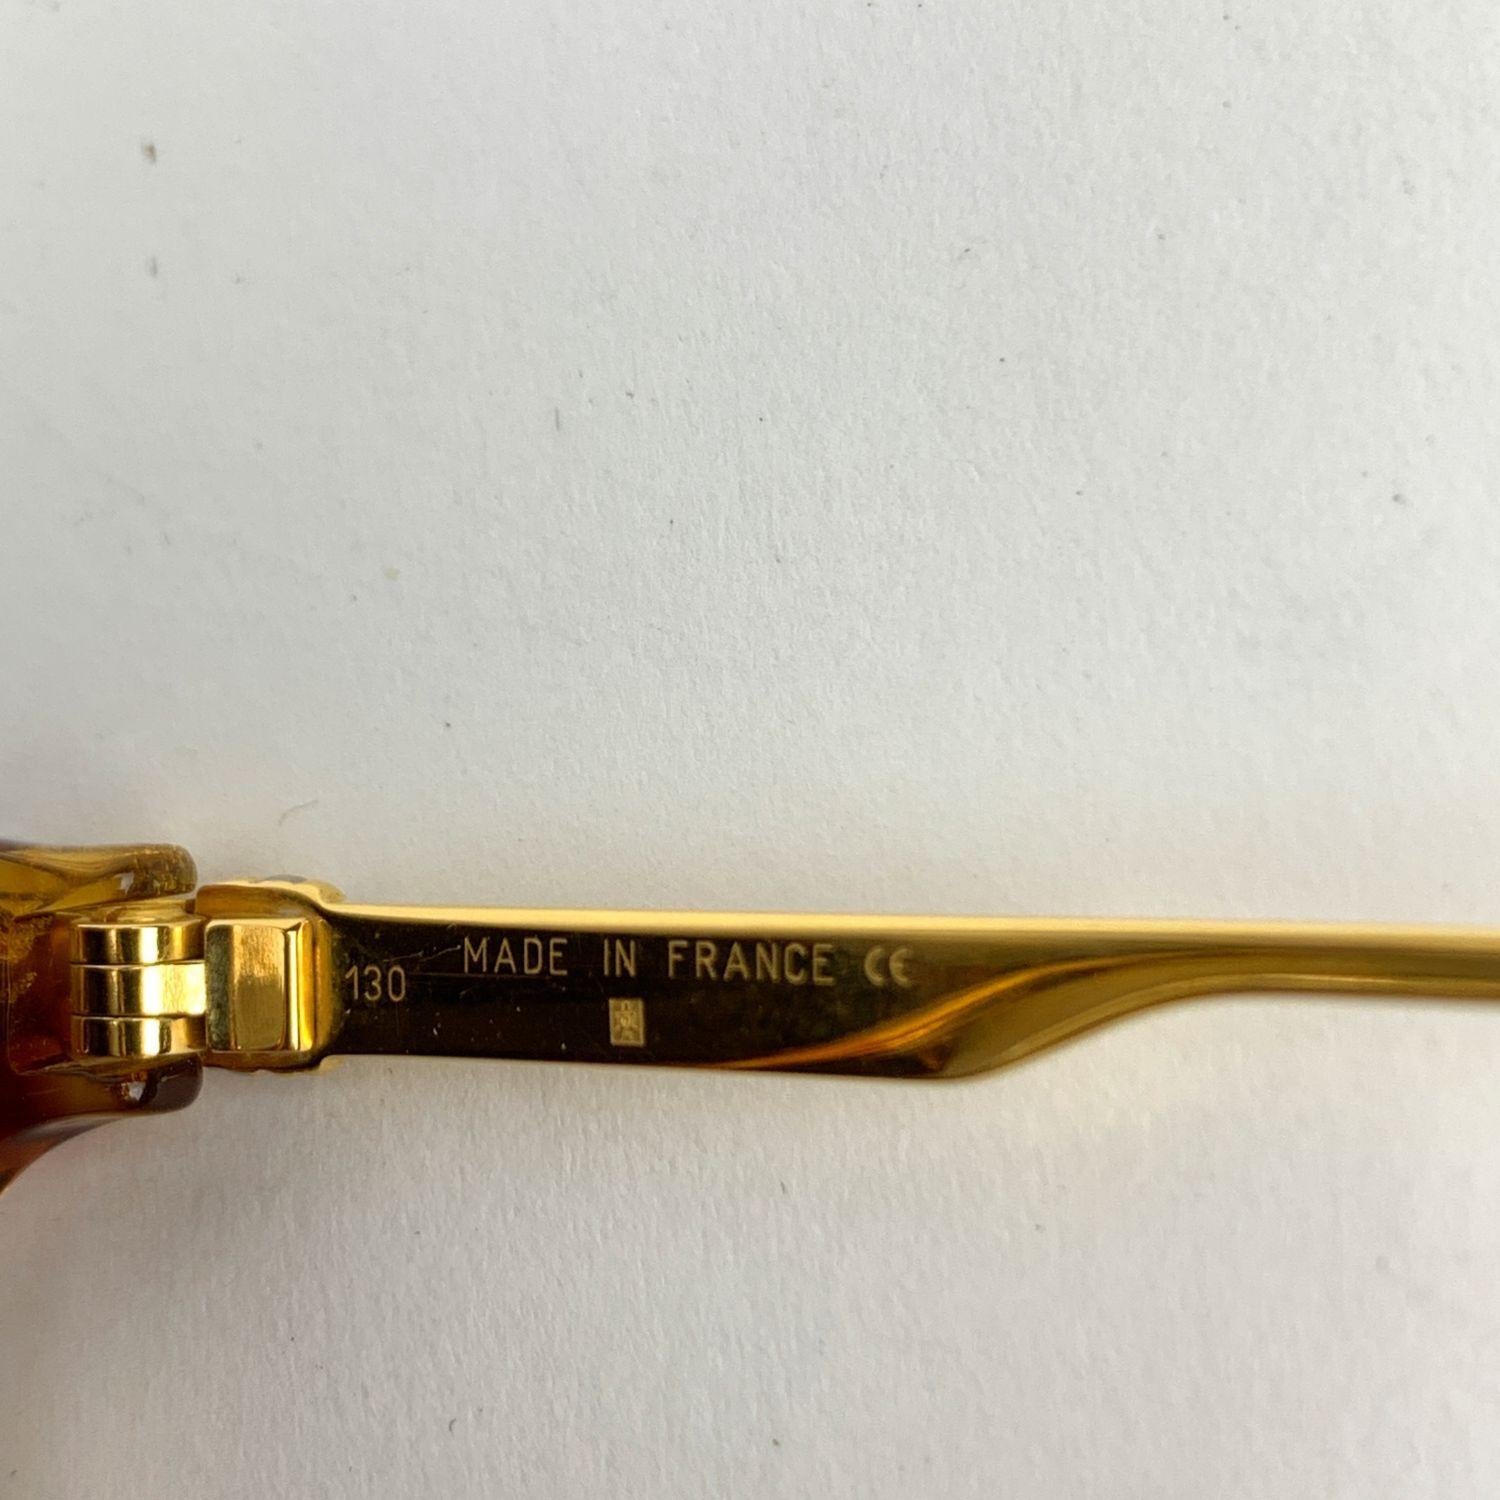 Brown Cartier Paris Vintage Sunglasses Eclat Miel Dore Gold Plated 51 130mm